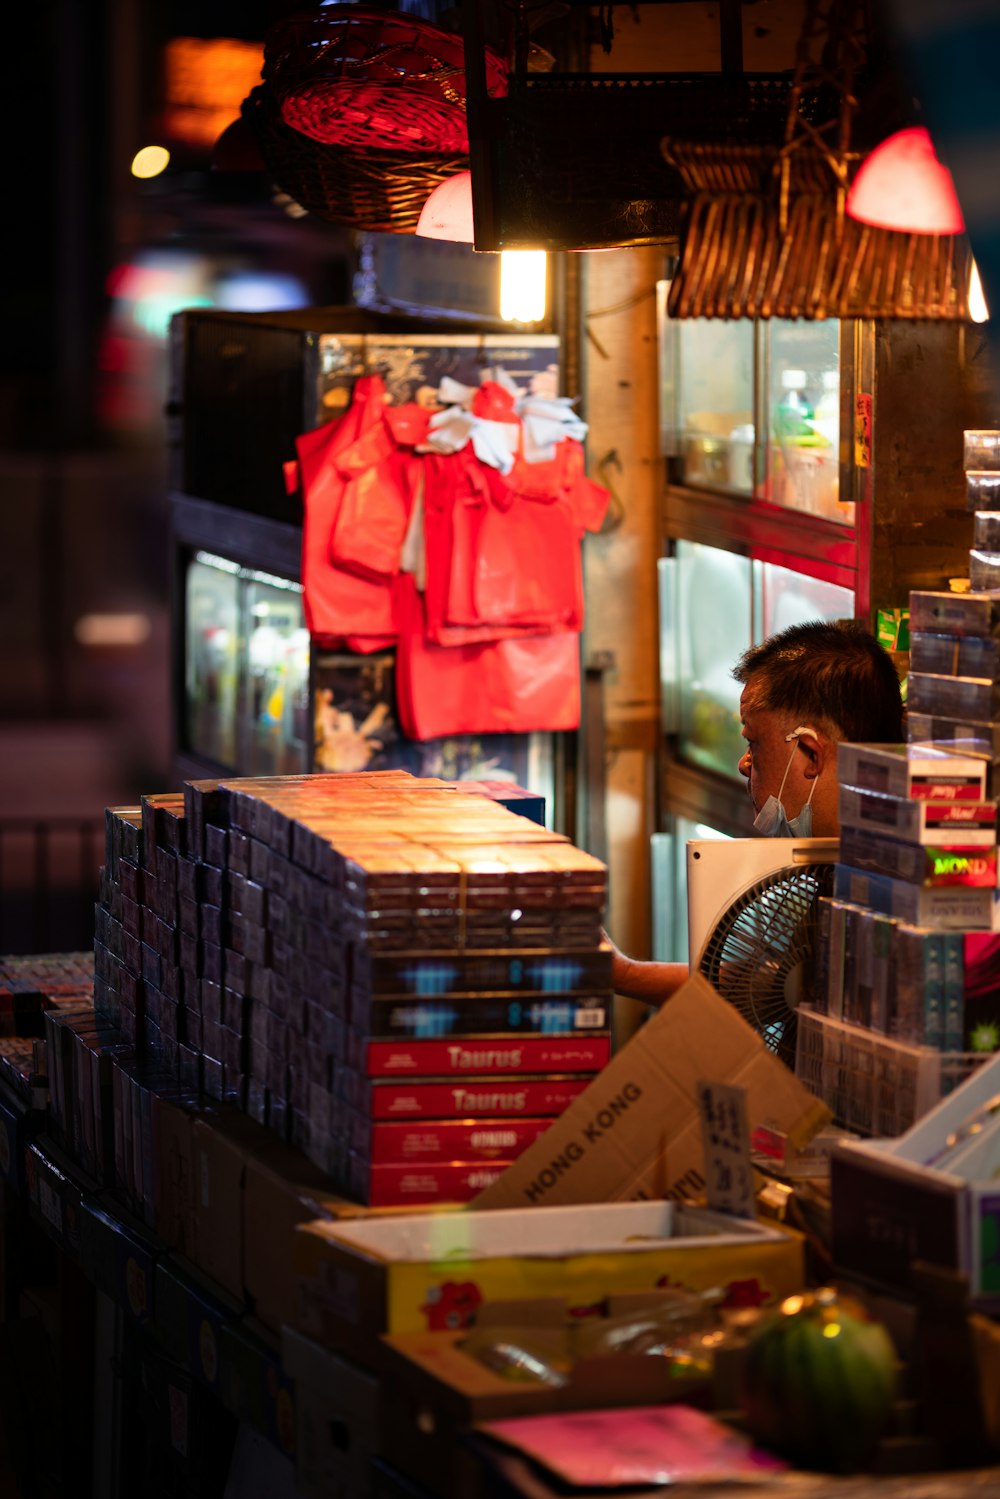 Un hombre sentado frente a una tienda llena de libros